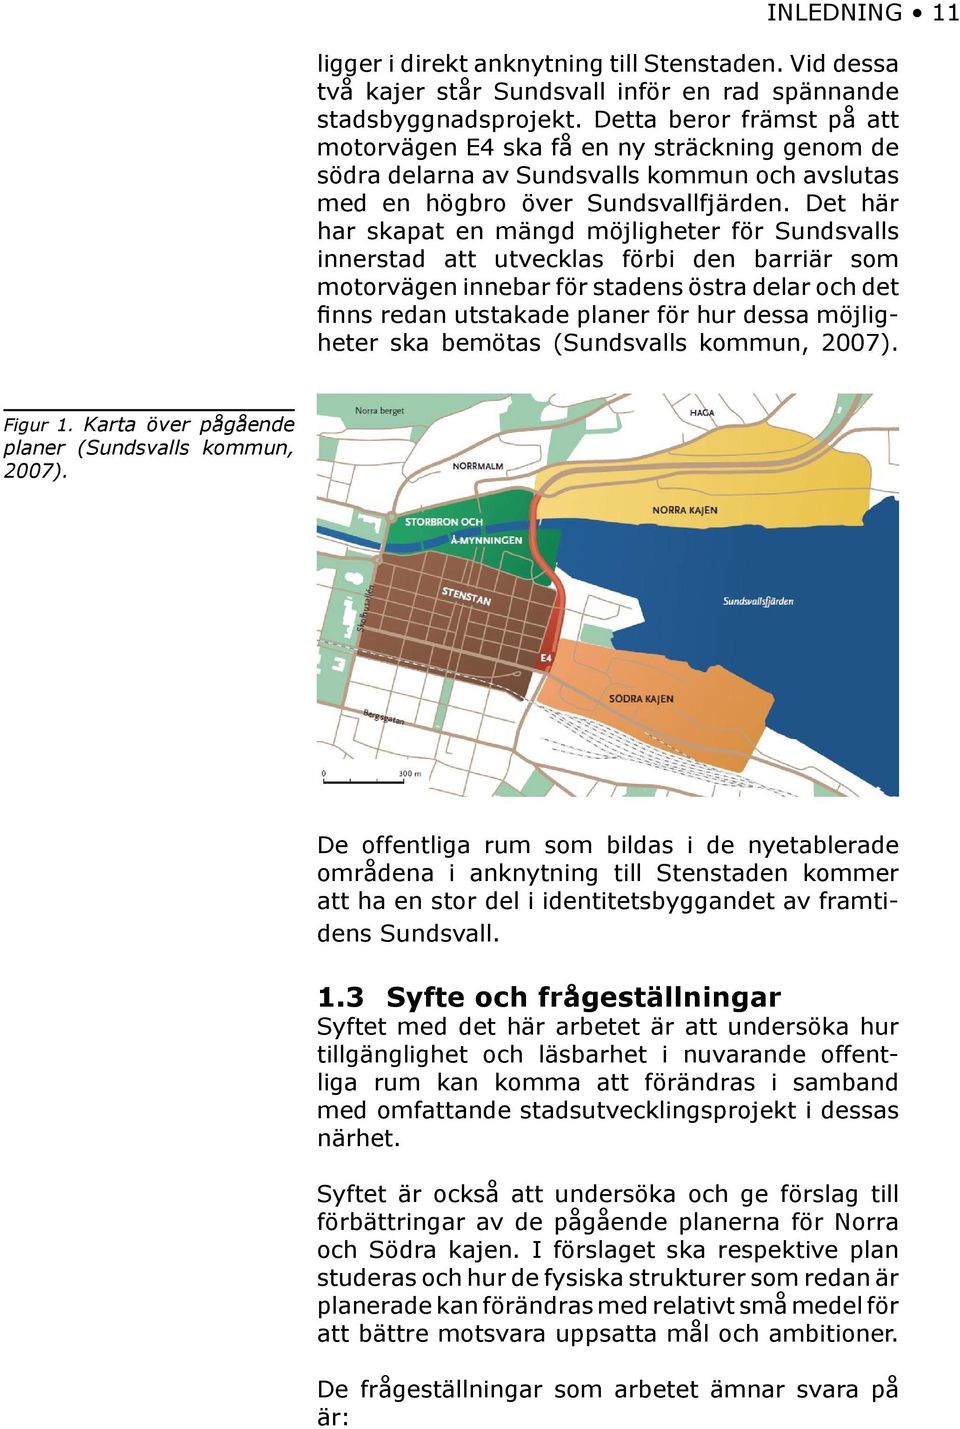 Det här har skapat en mängd möjligheter för Sundsvalls innerstad att utvecklas förbi den barriär som motorvägen innebar för stadens östra delar och det finns redan utstakade planer för hur dessa